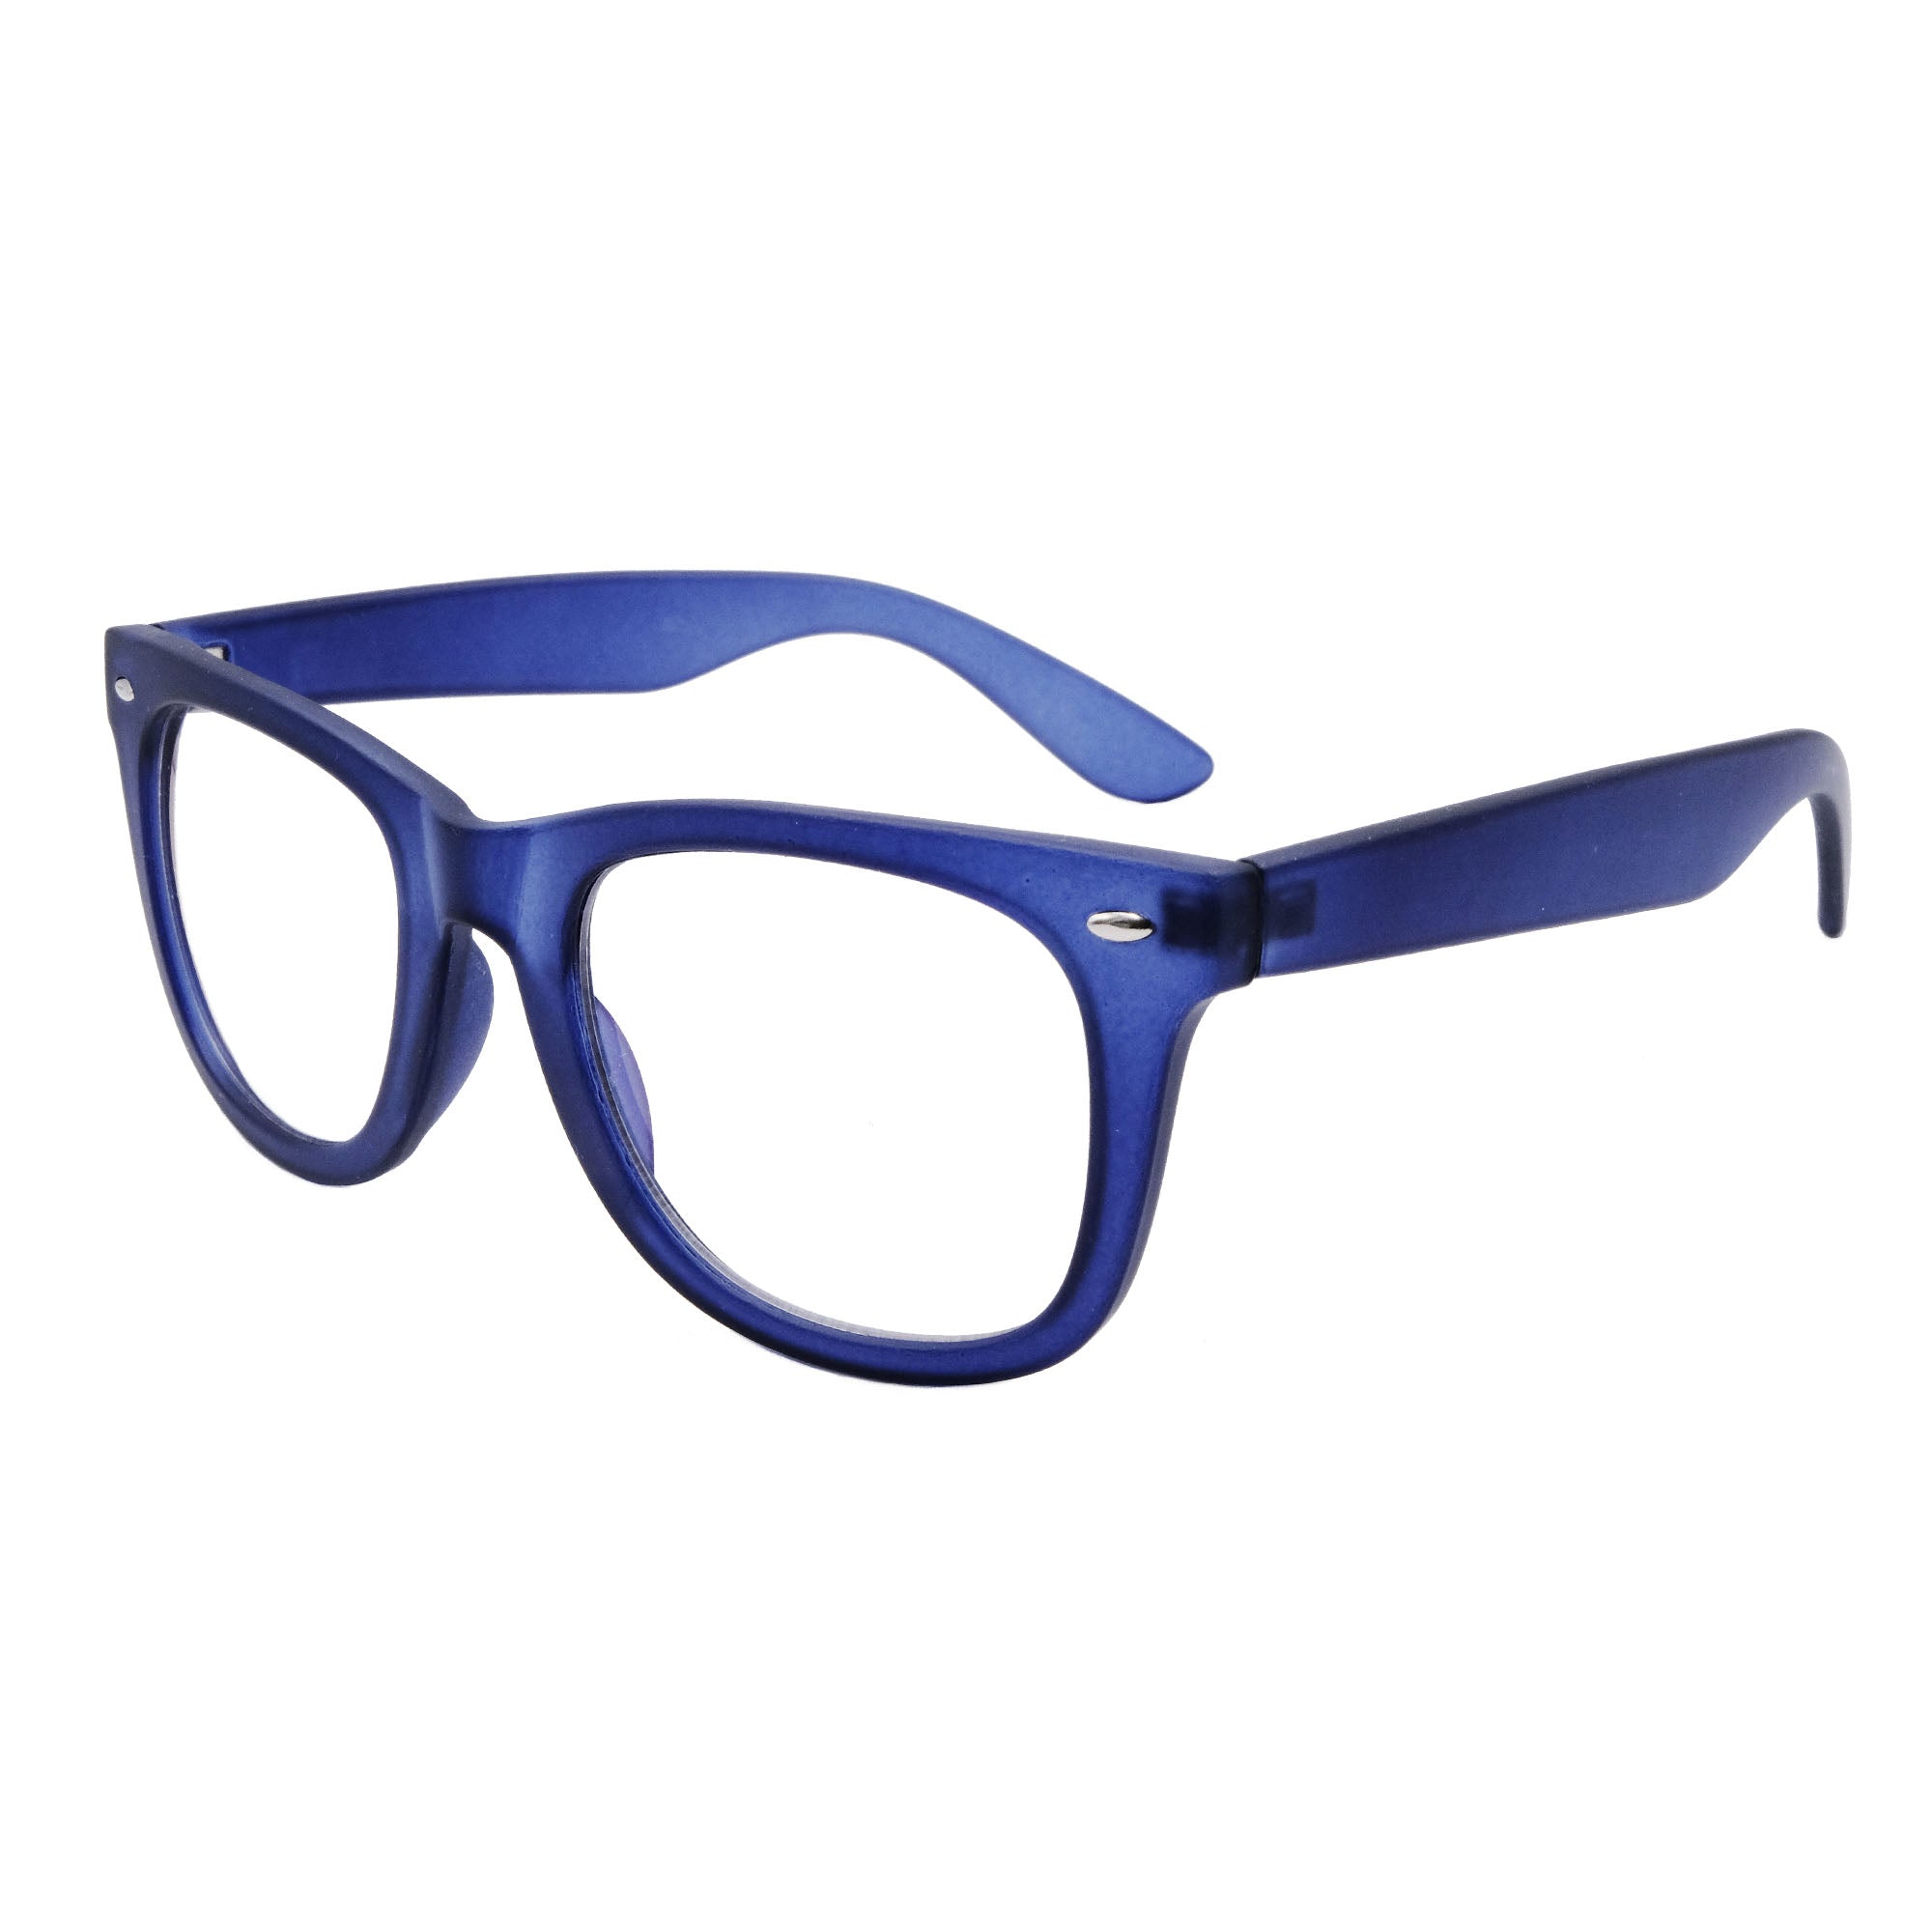 blue nerd glasses